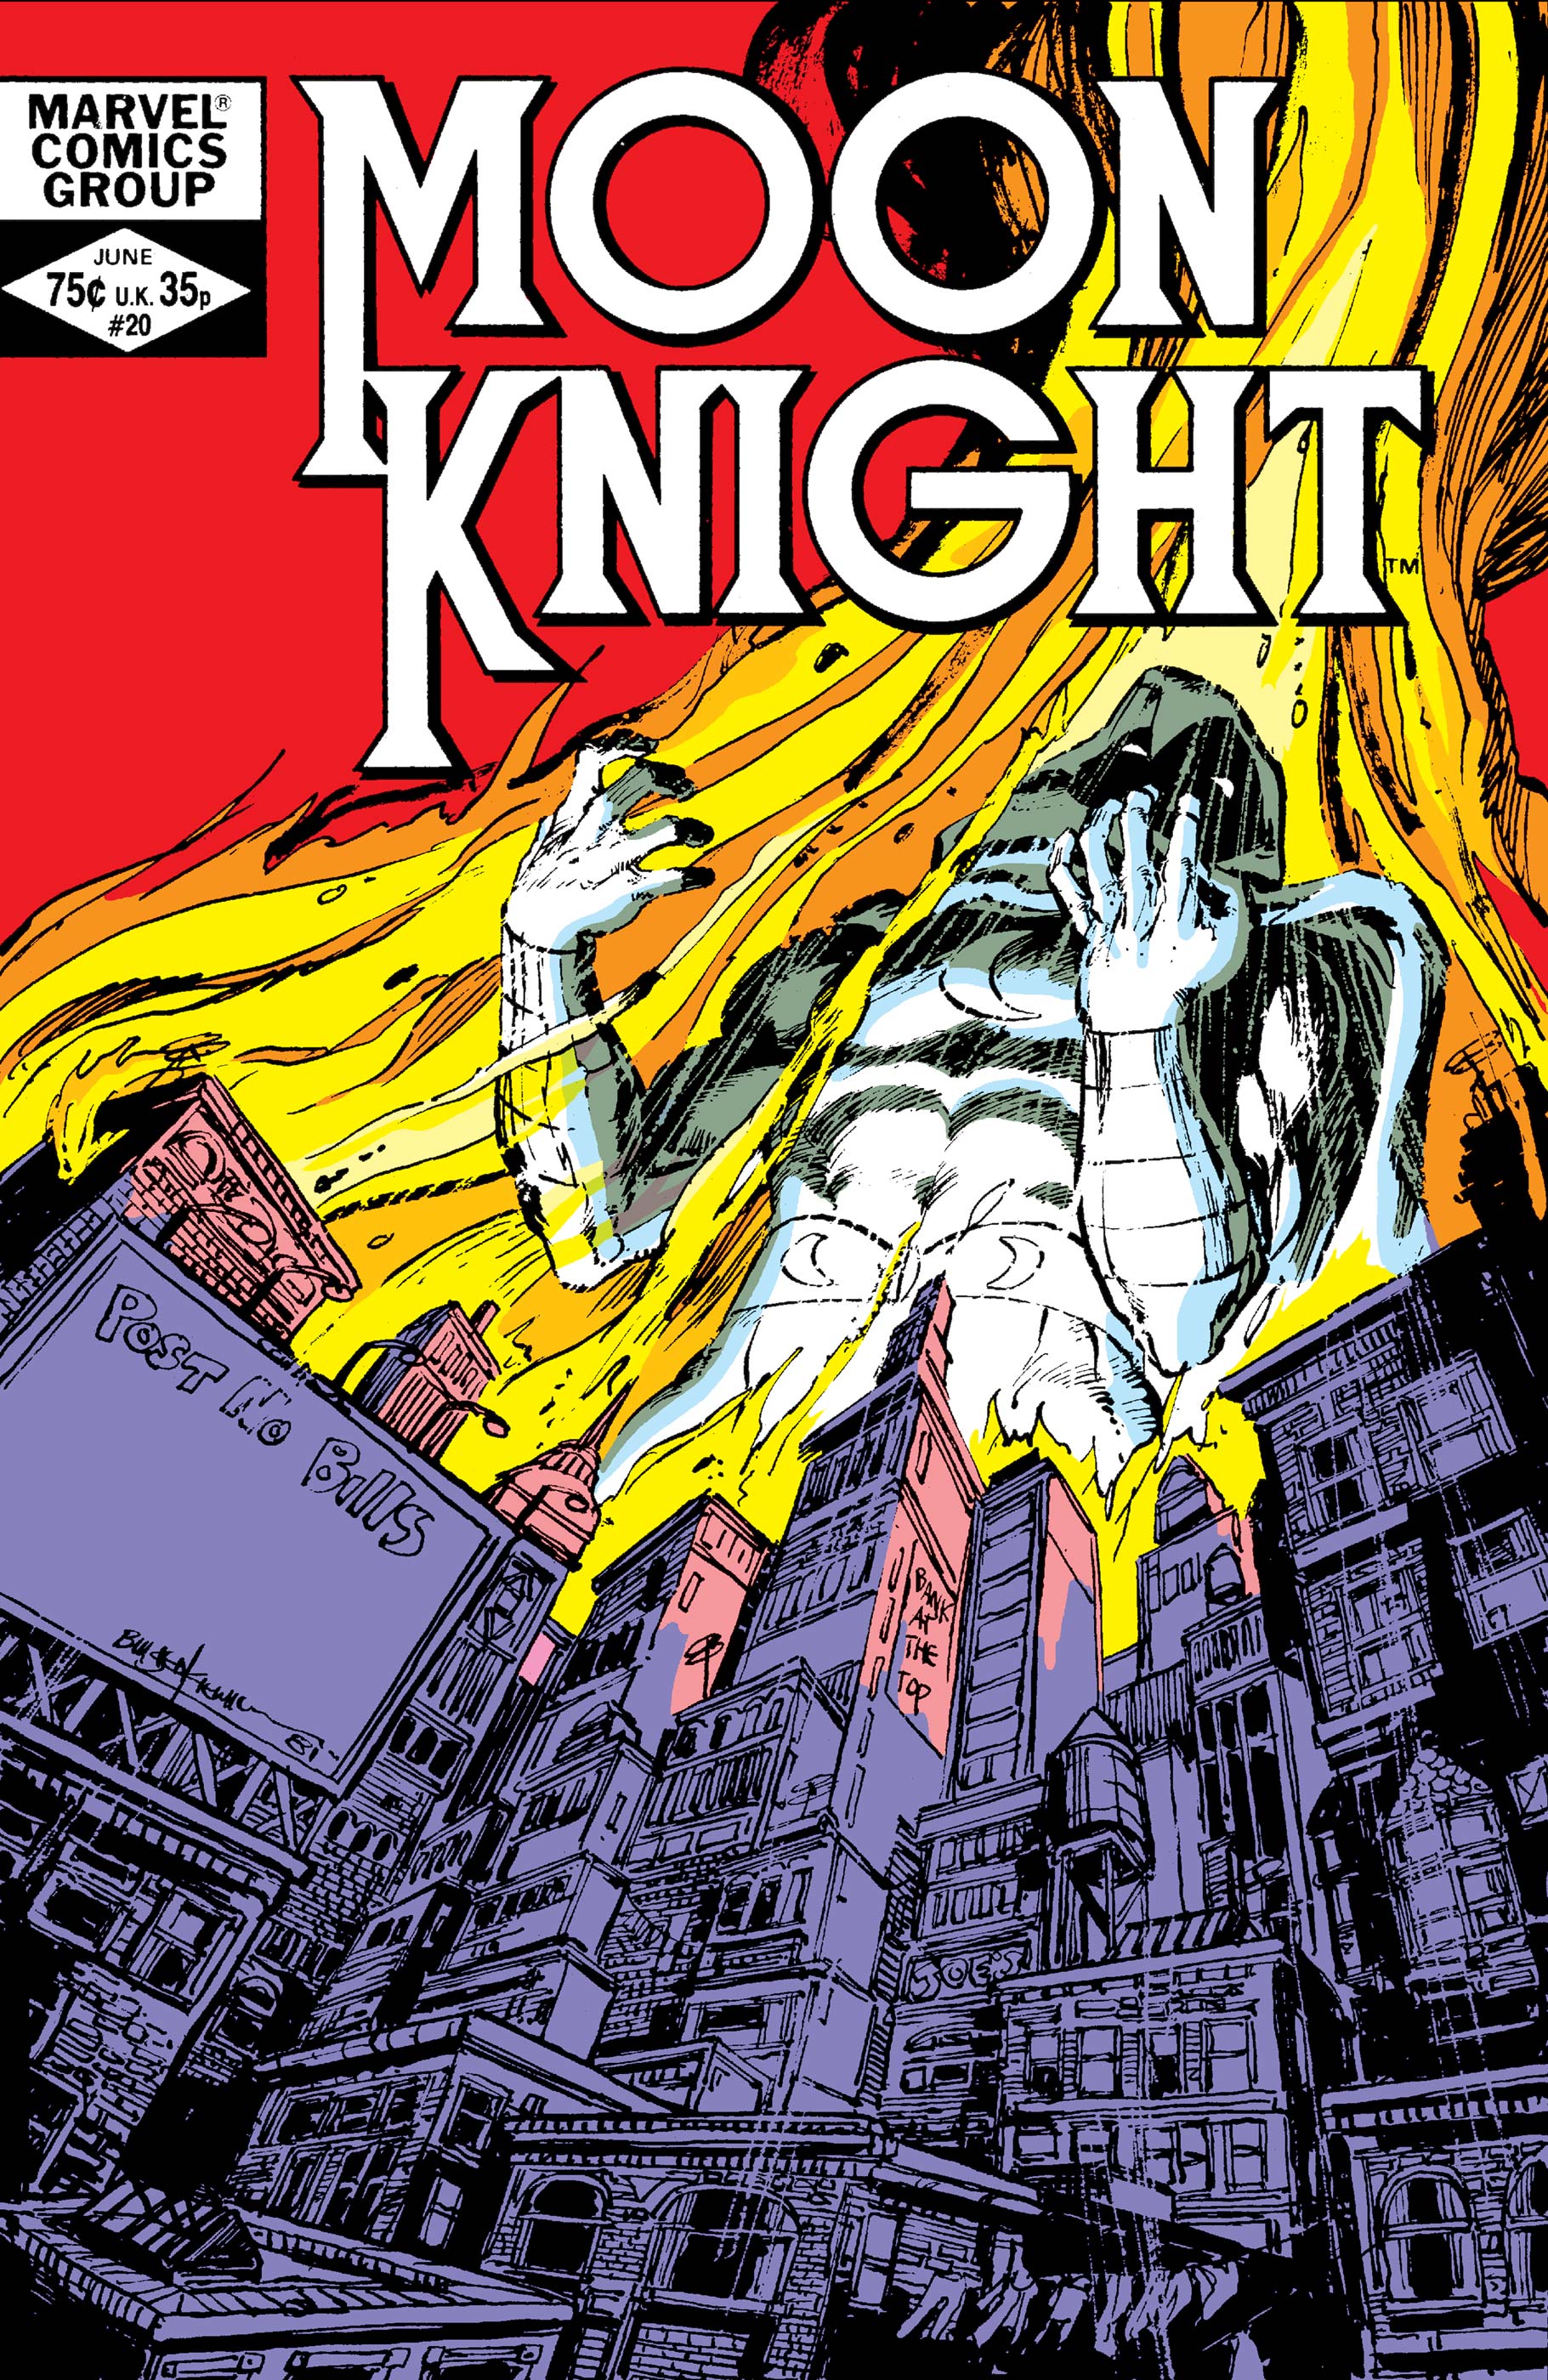 Moon Knight (1980) #20